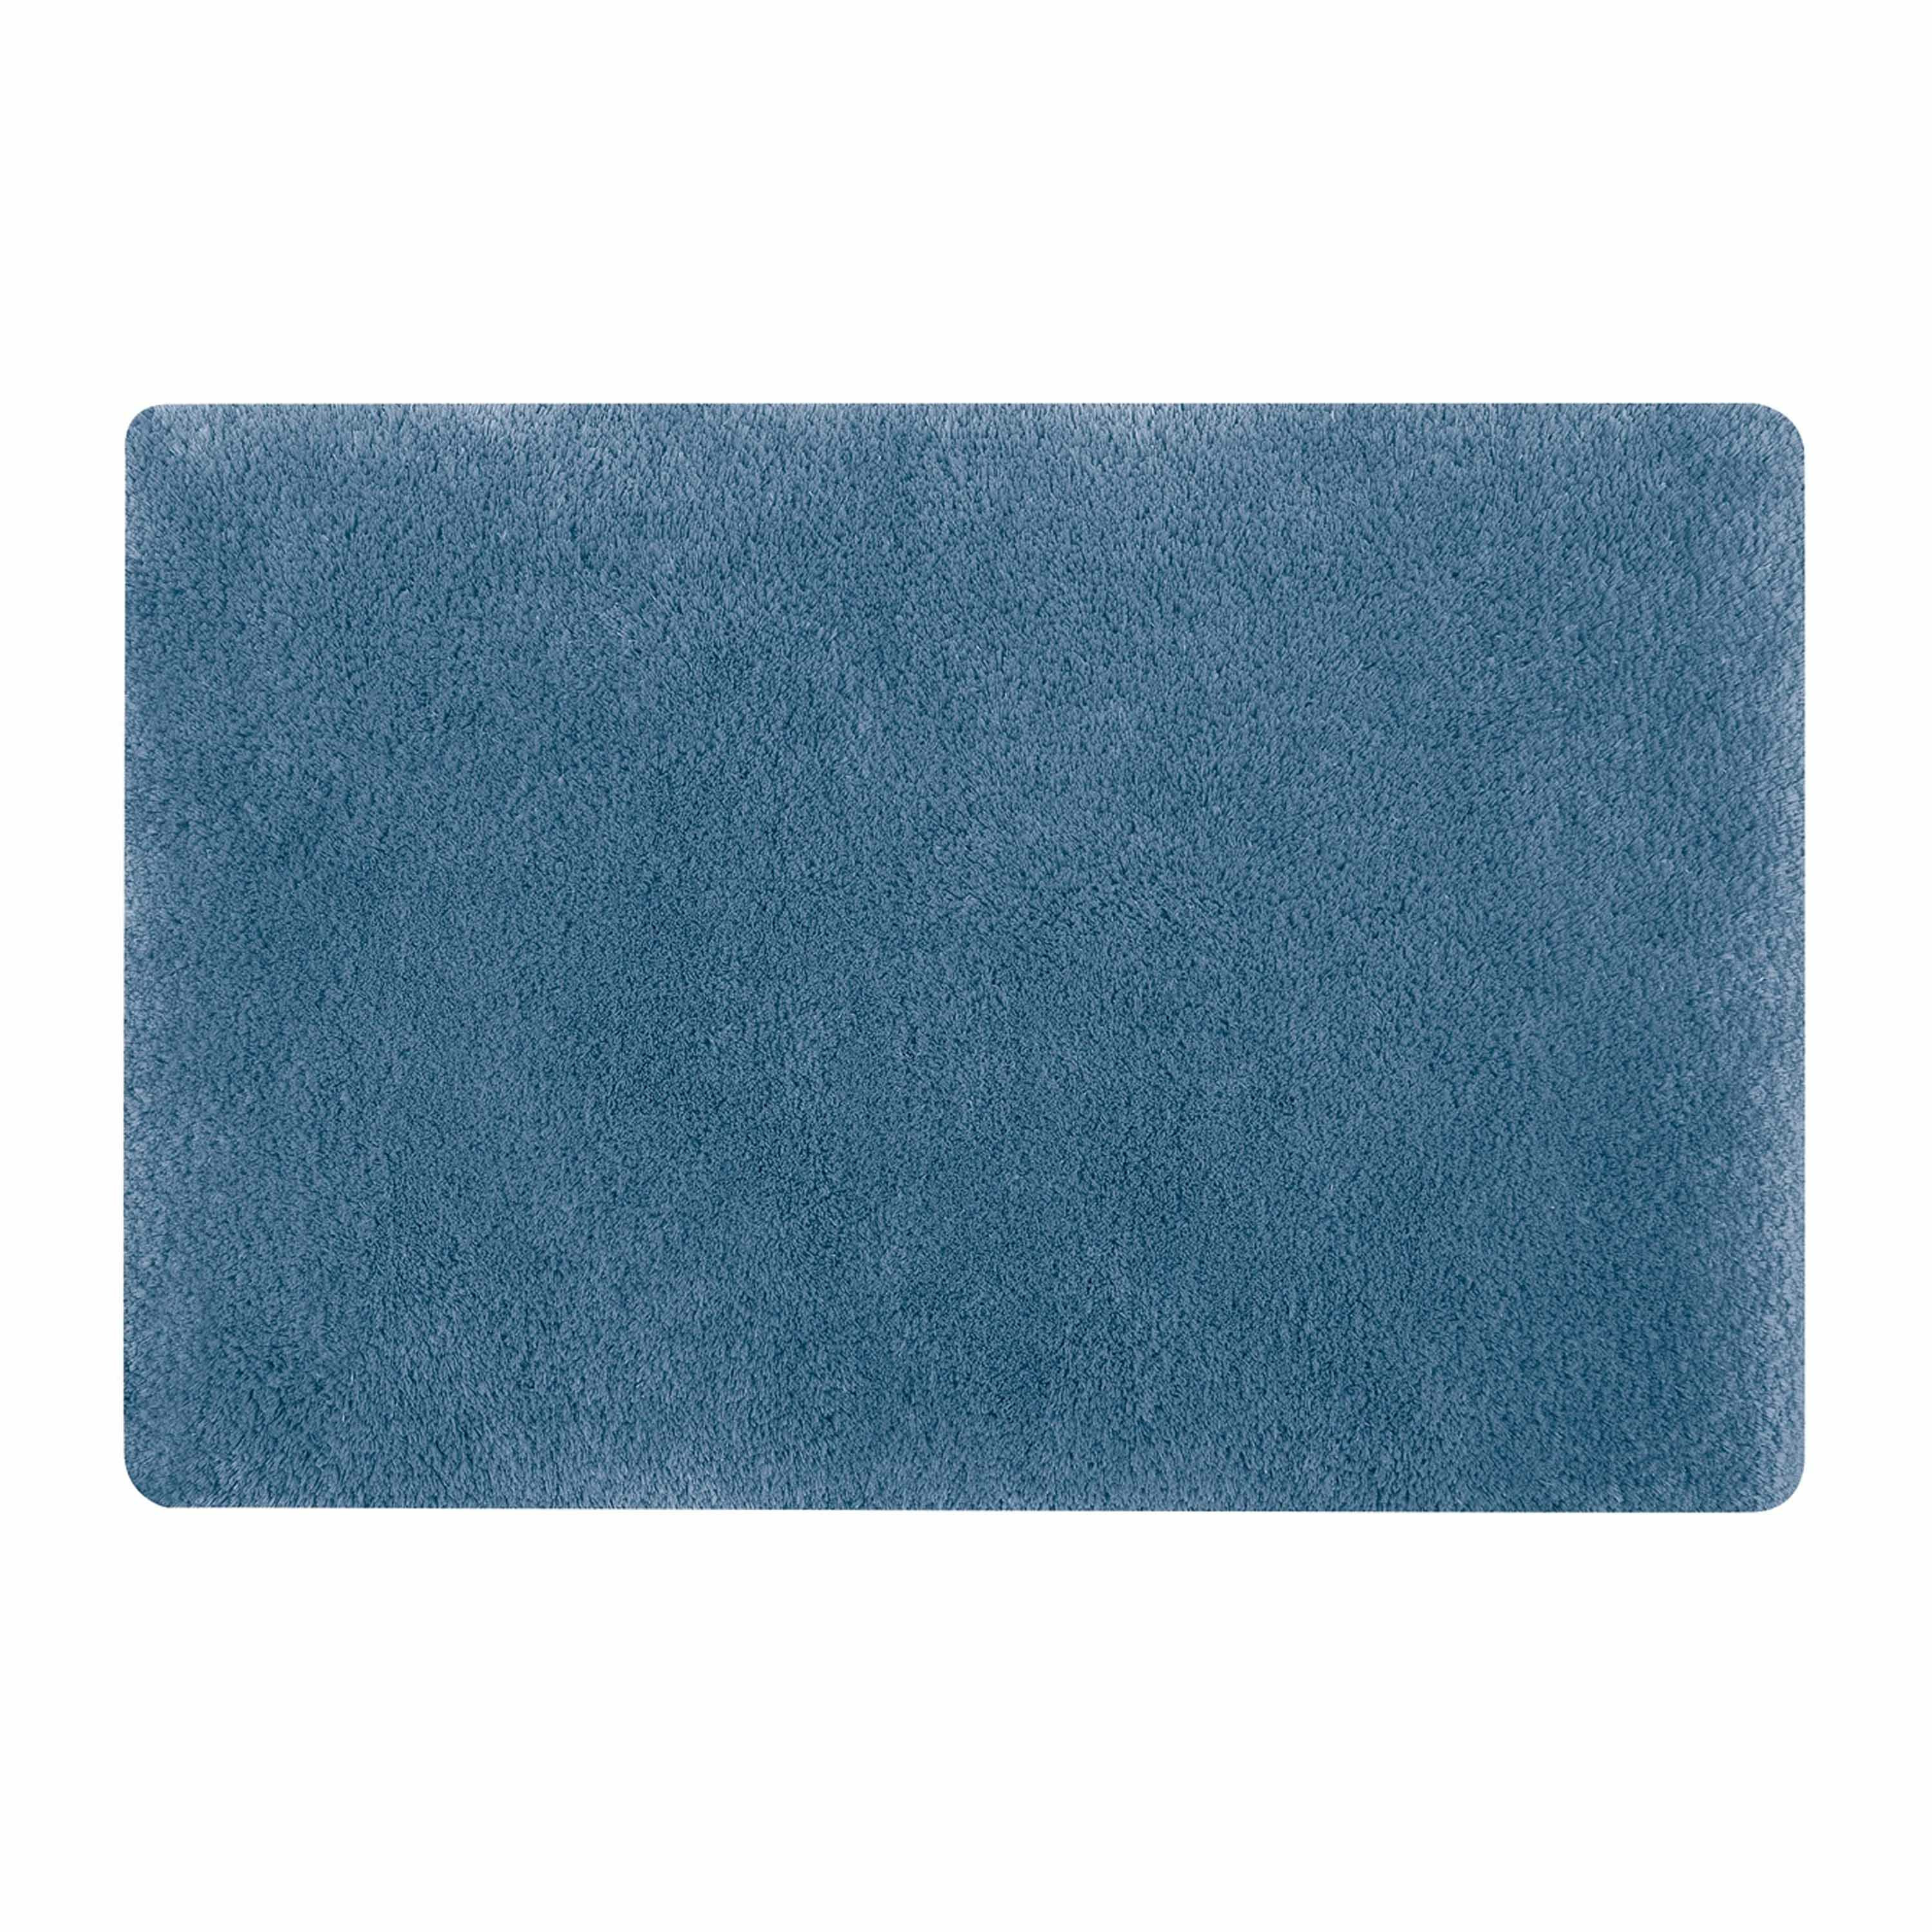 Spirella badkamer vloer kleedje-badmat tapijt hoogpolig en luxe uitvoering blauw 50 x 80 cm Microfib